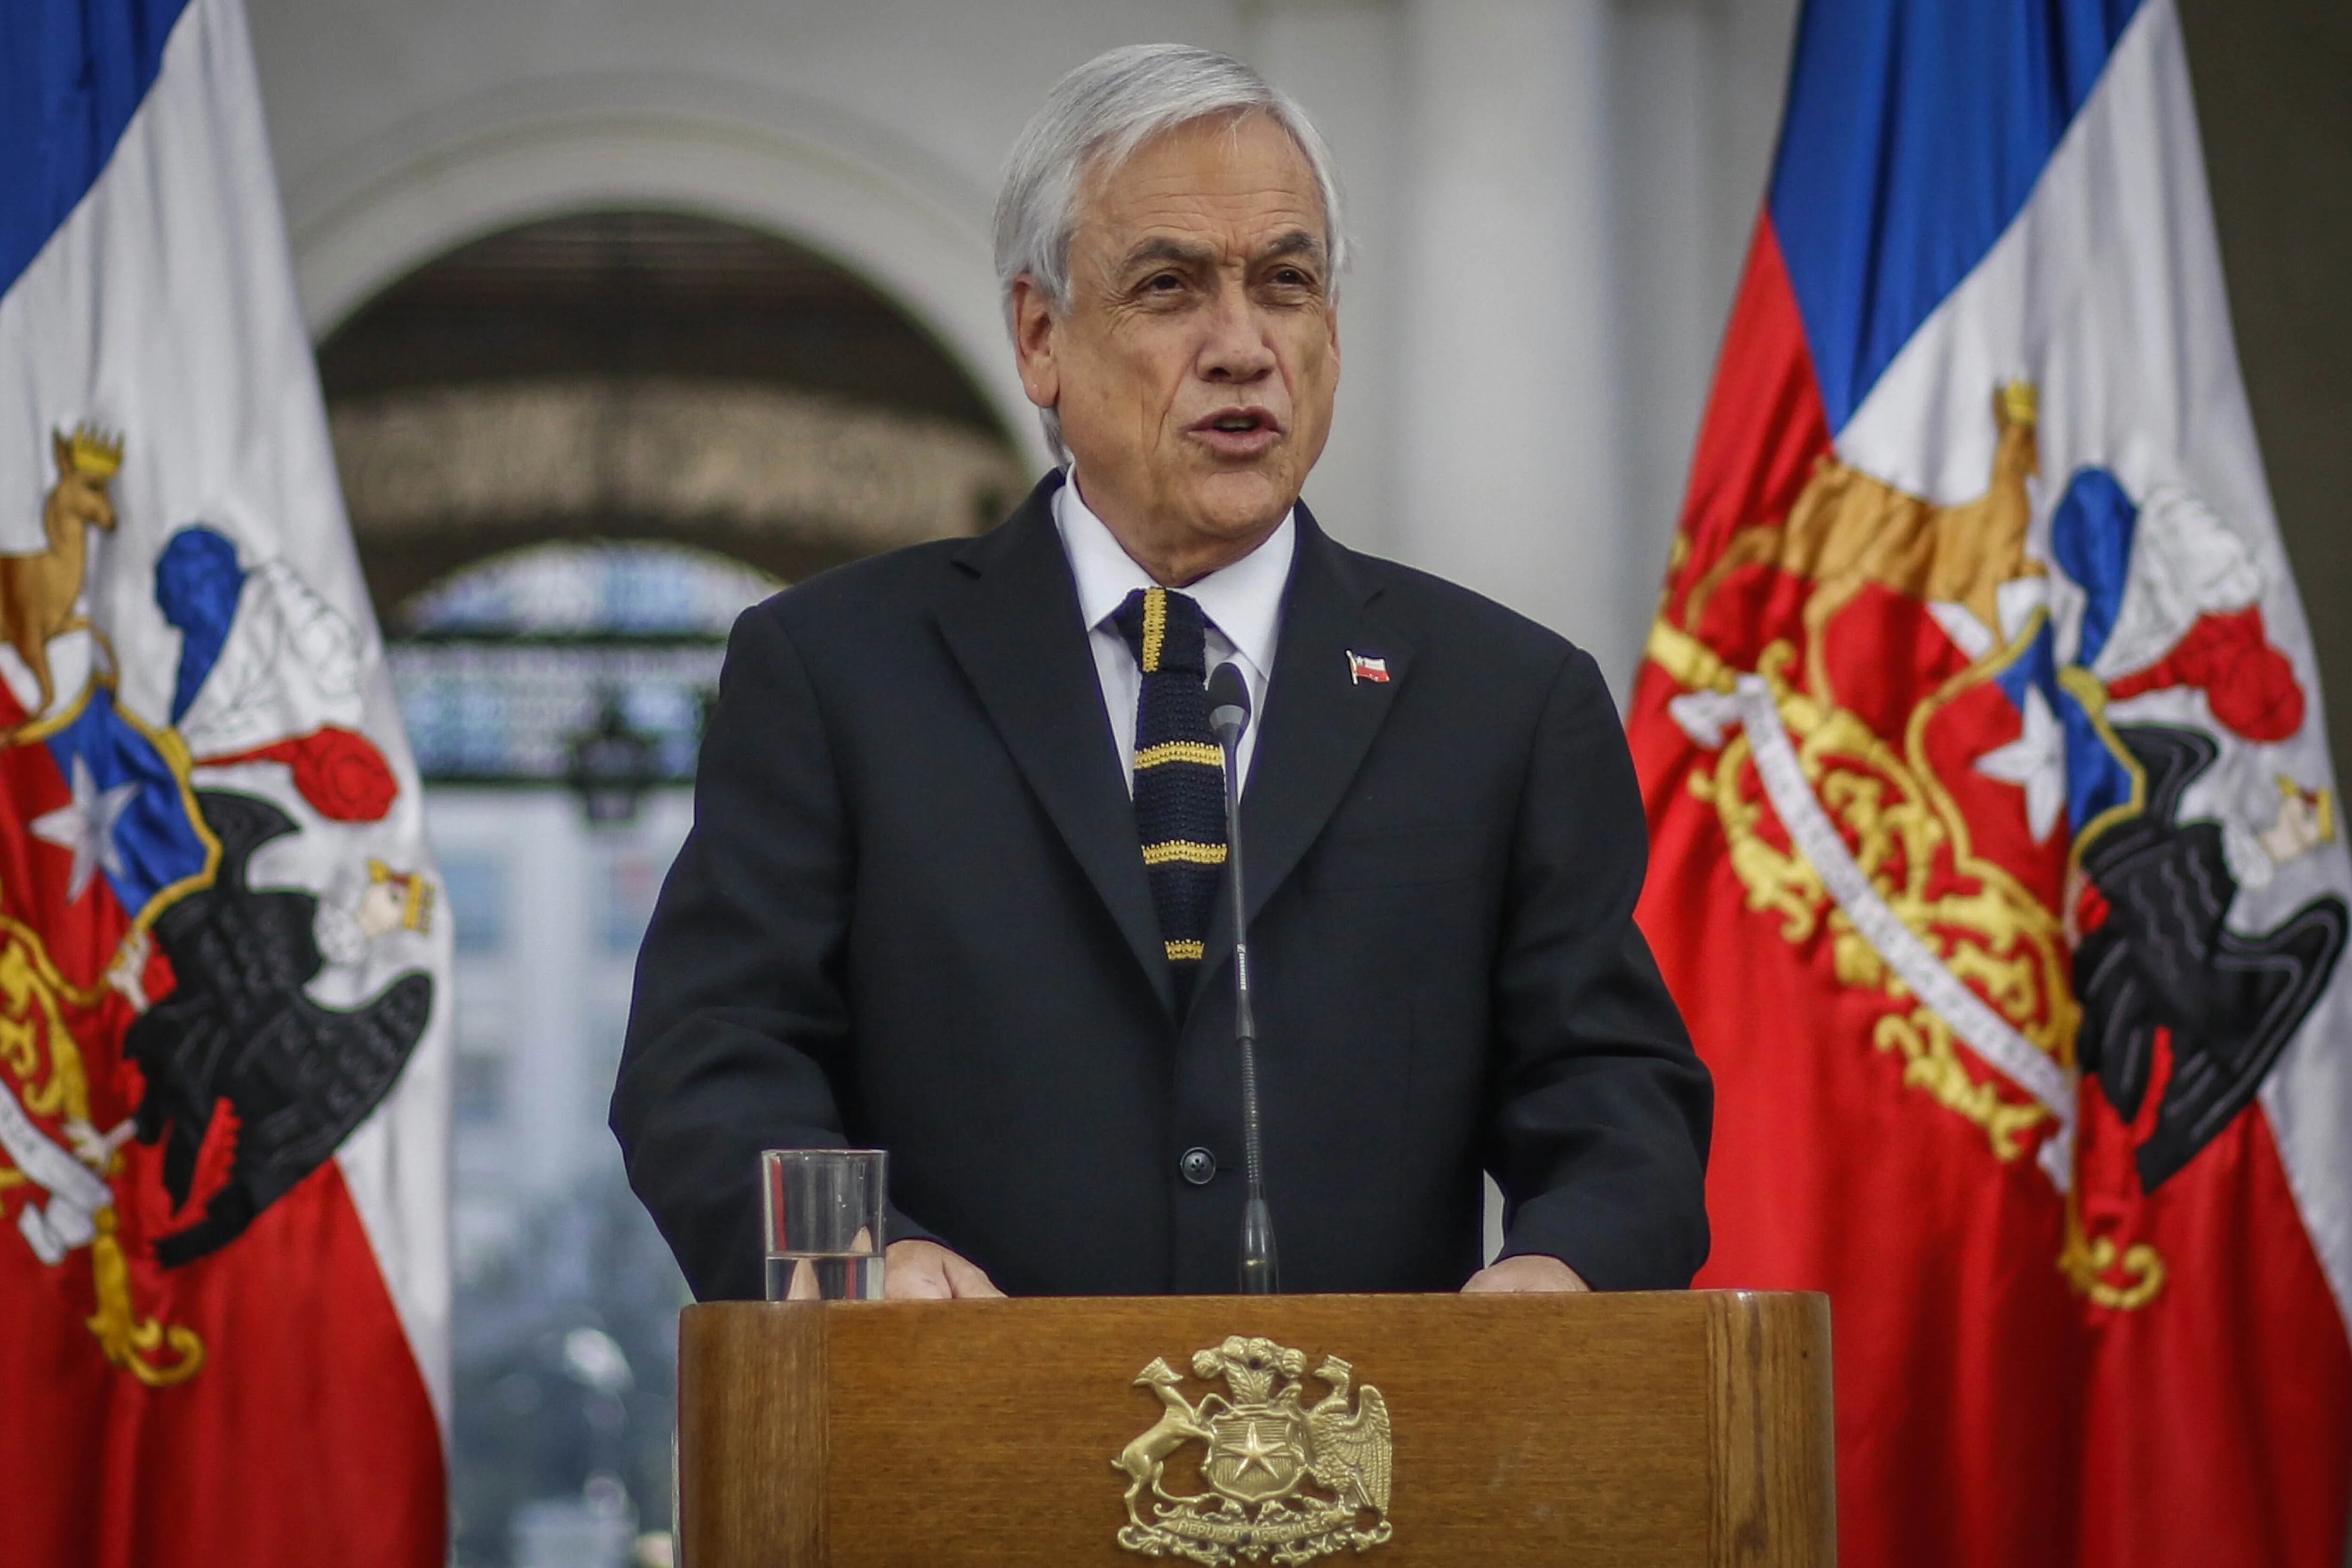 El gobierno chileno rechazó las declaraciones de Bielsa: “Representan una intromisión inaceptable”